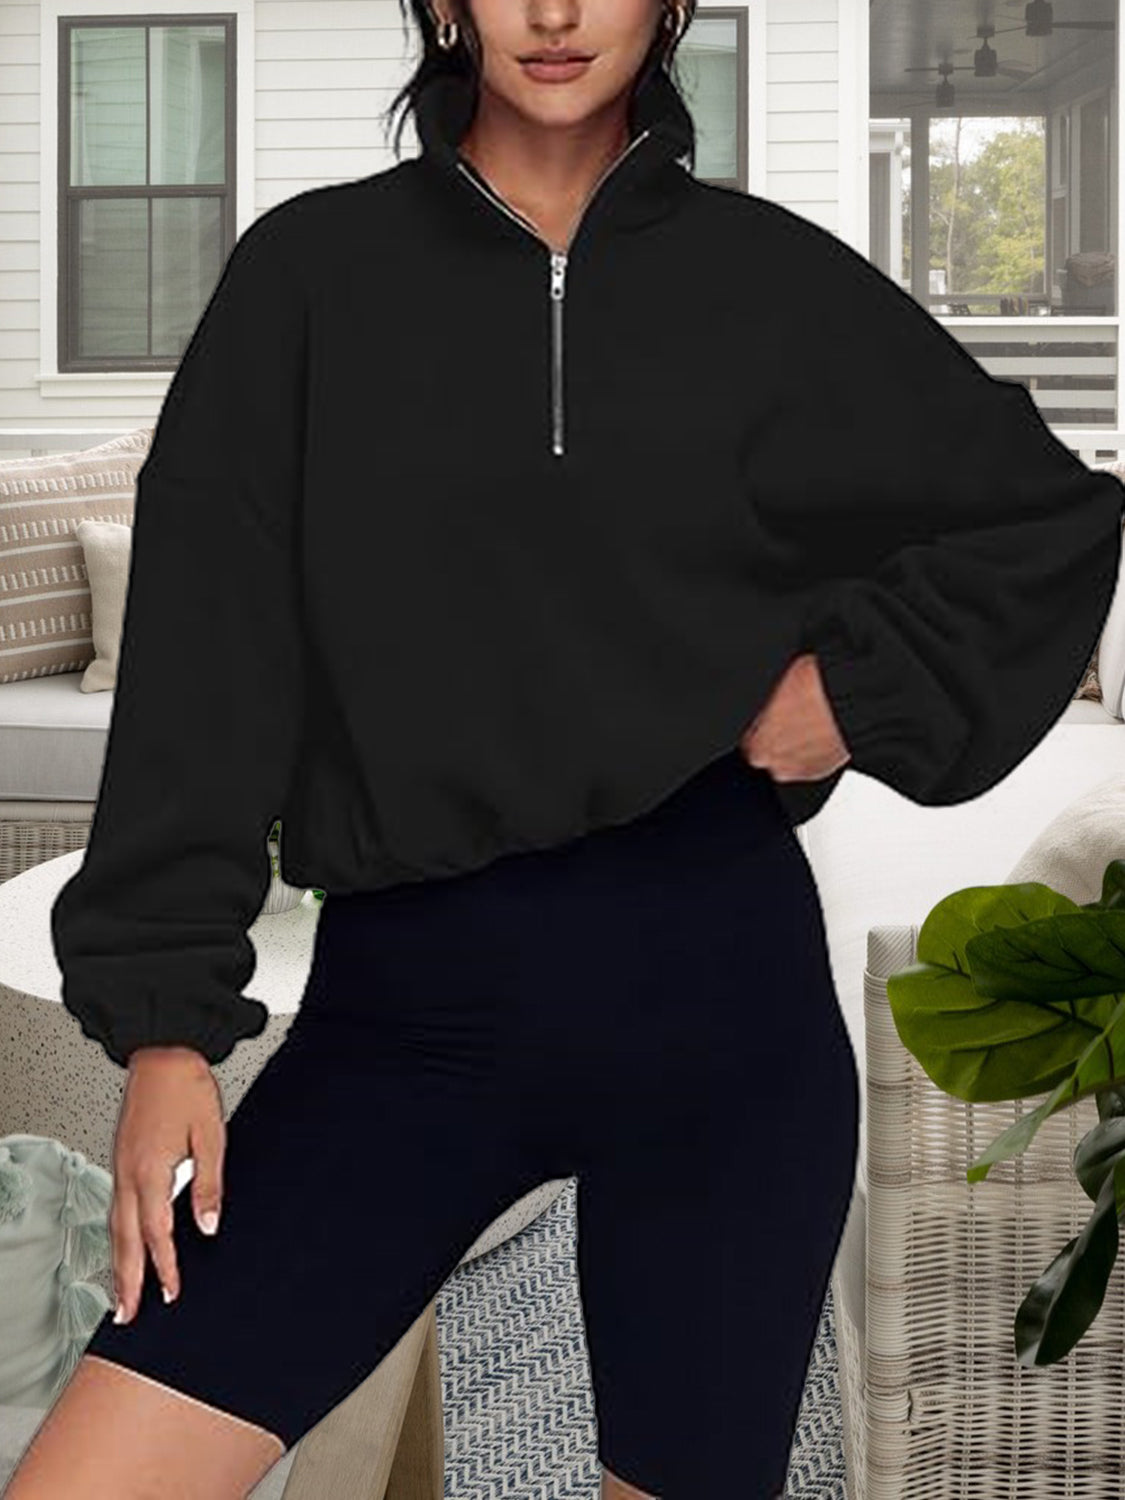 Half-Zip Collared Drop Shoulder Fleece Sweatshirt